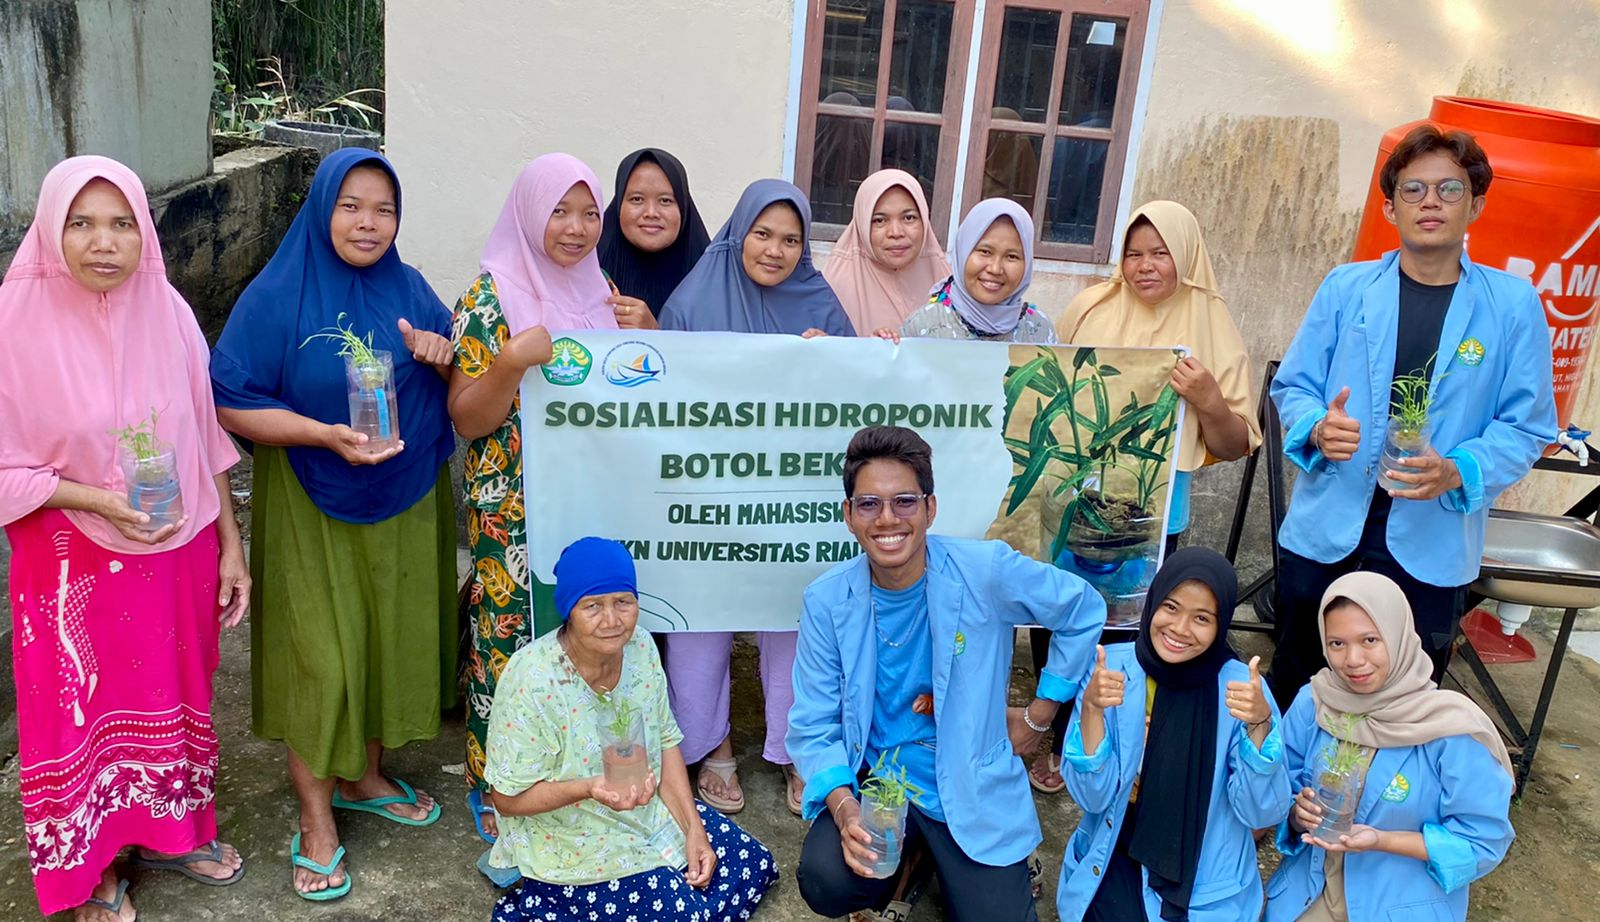 Mahasiswa KKN UNRI melakukan Sosialisasi Hidroponik Sederhana dari Botol Bekas